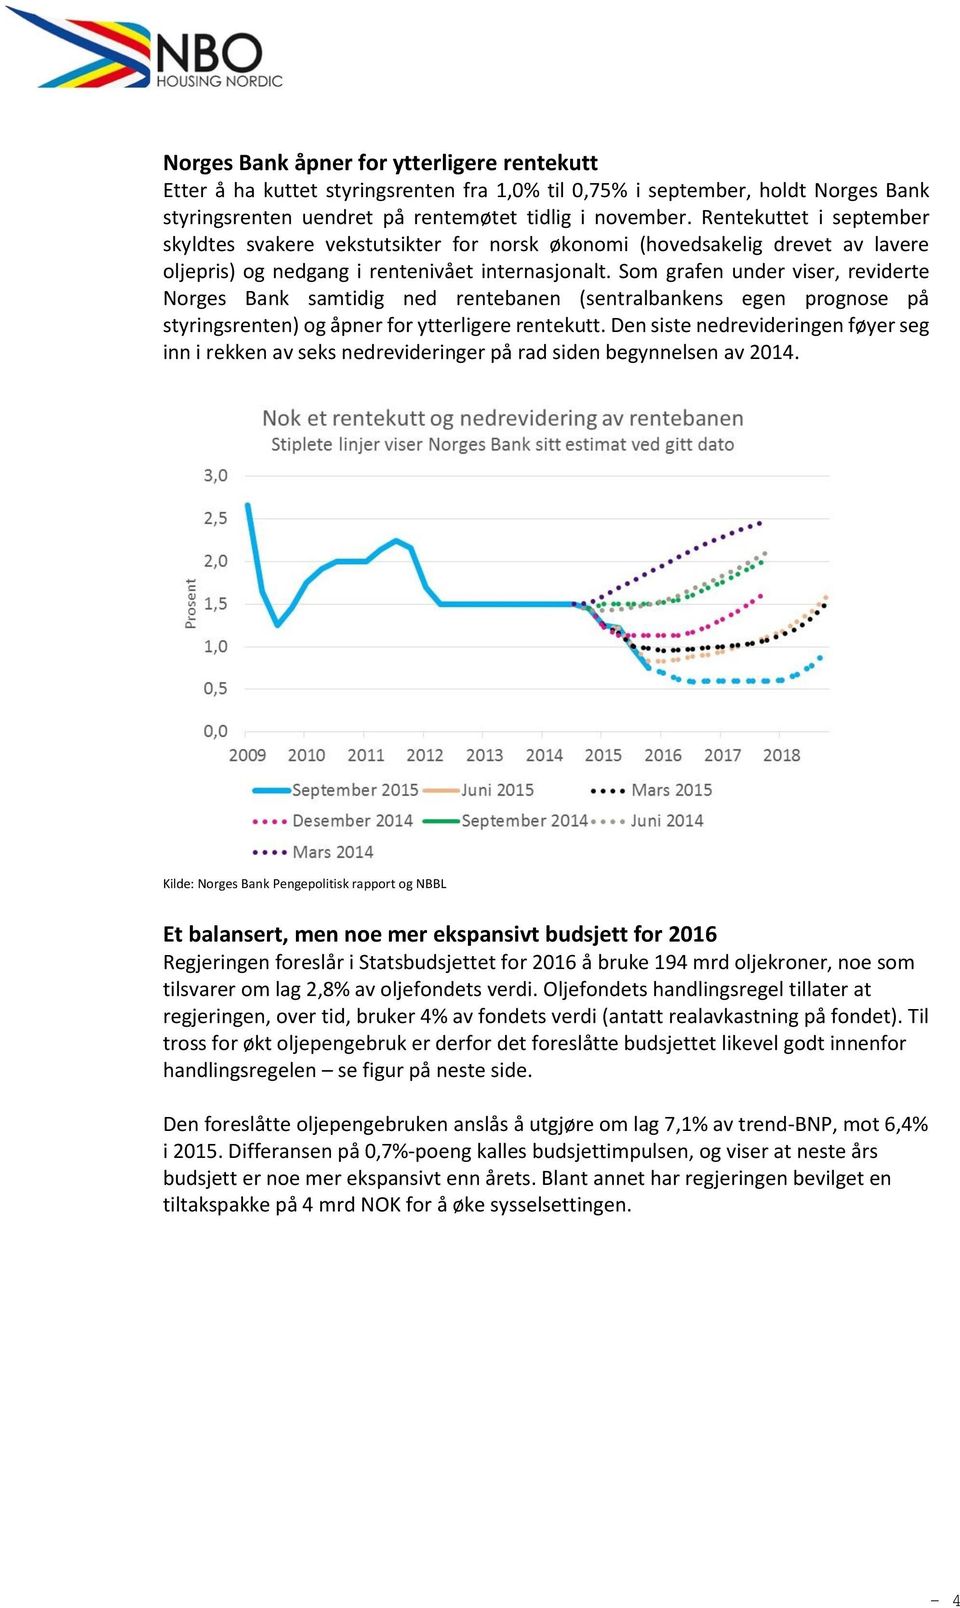 Som grafen under viser, reviderte Norges Bank samtidig ned rentebanen (sentralbankens egen prognose på styringsrenten) og åpner for ytterligere rentekutt.